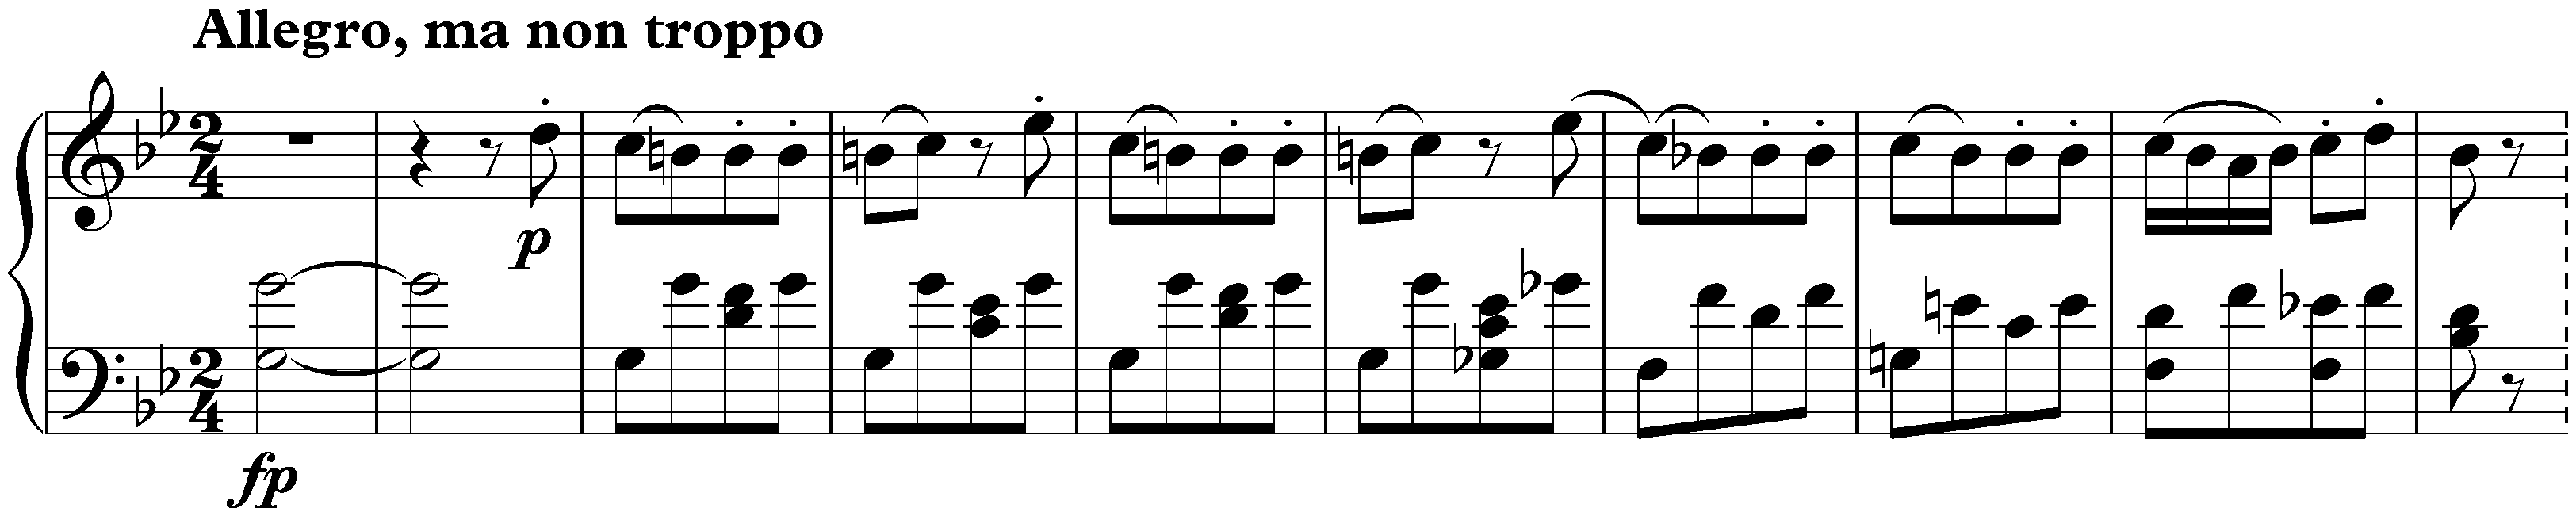 Sonata in B-flat major, D 960; 4. Allegro, ma non troppo